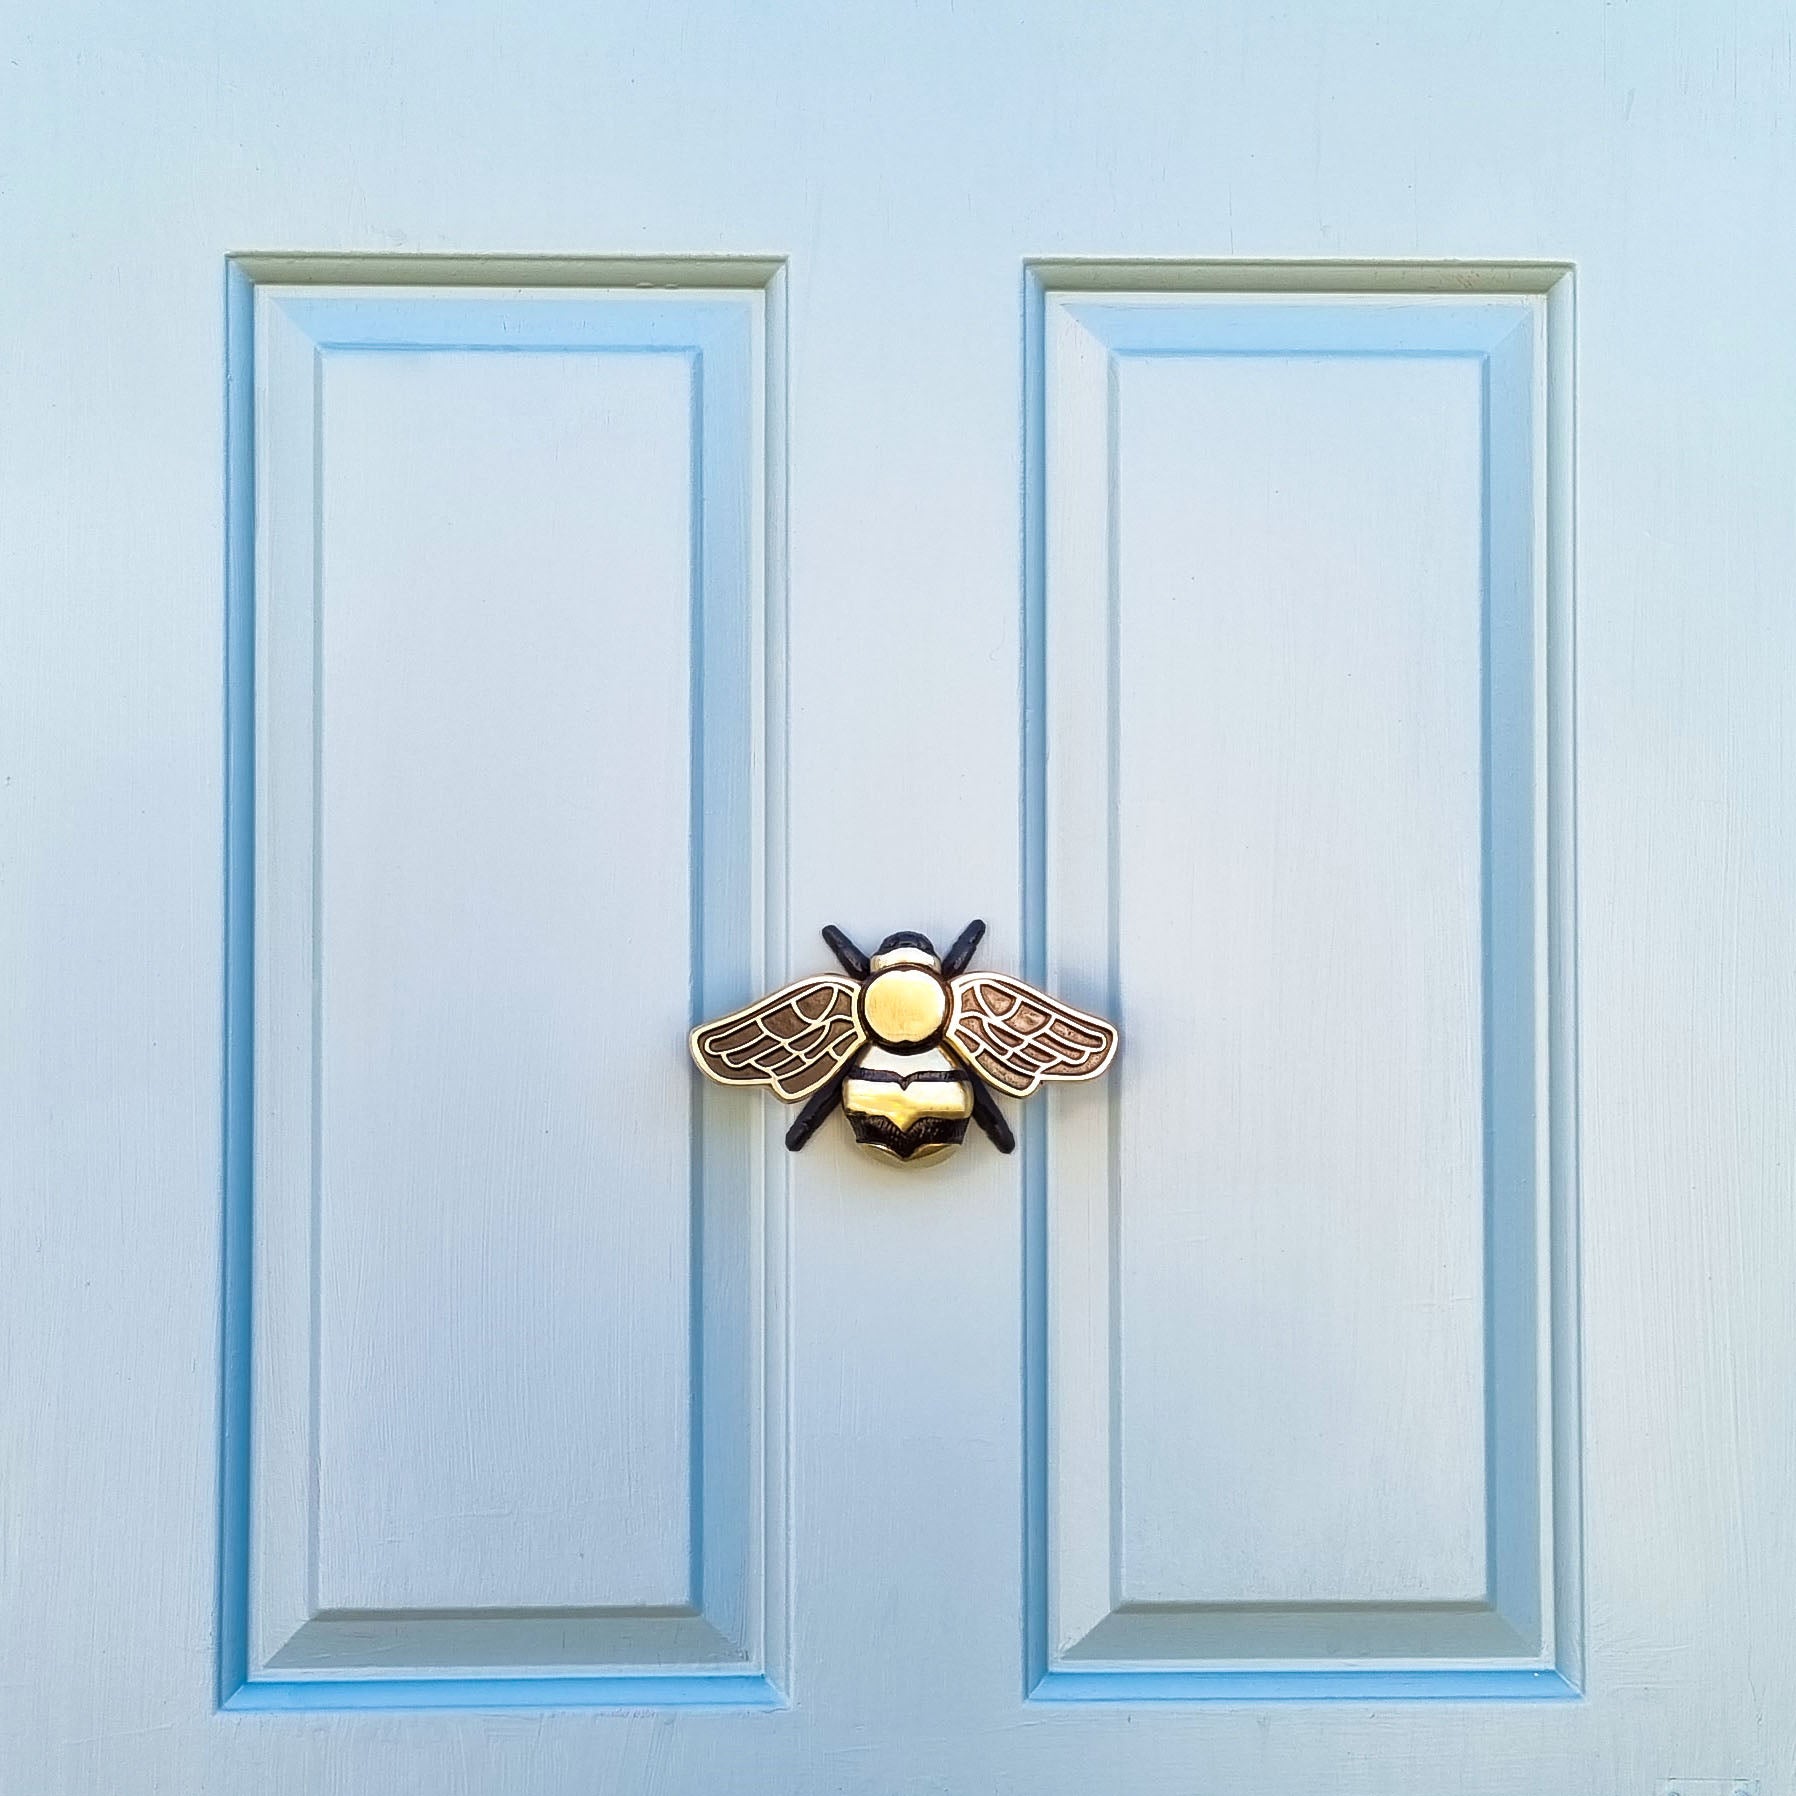 Bumble Bee Door Knocker - The Metal Foundry